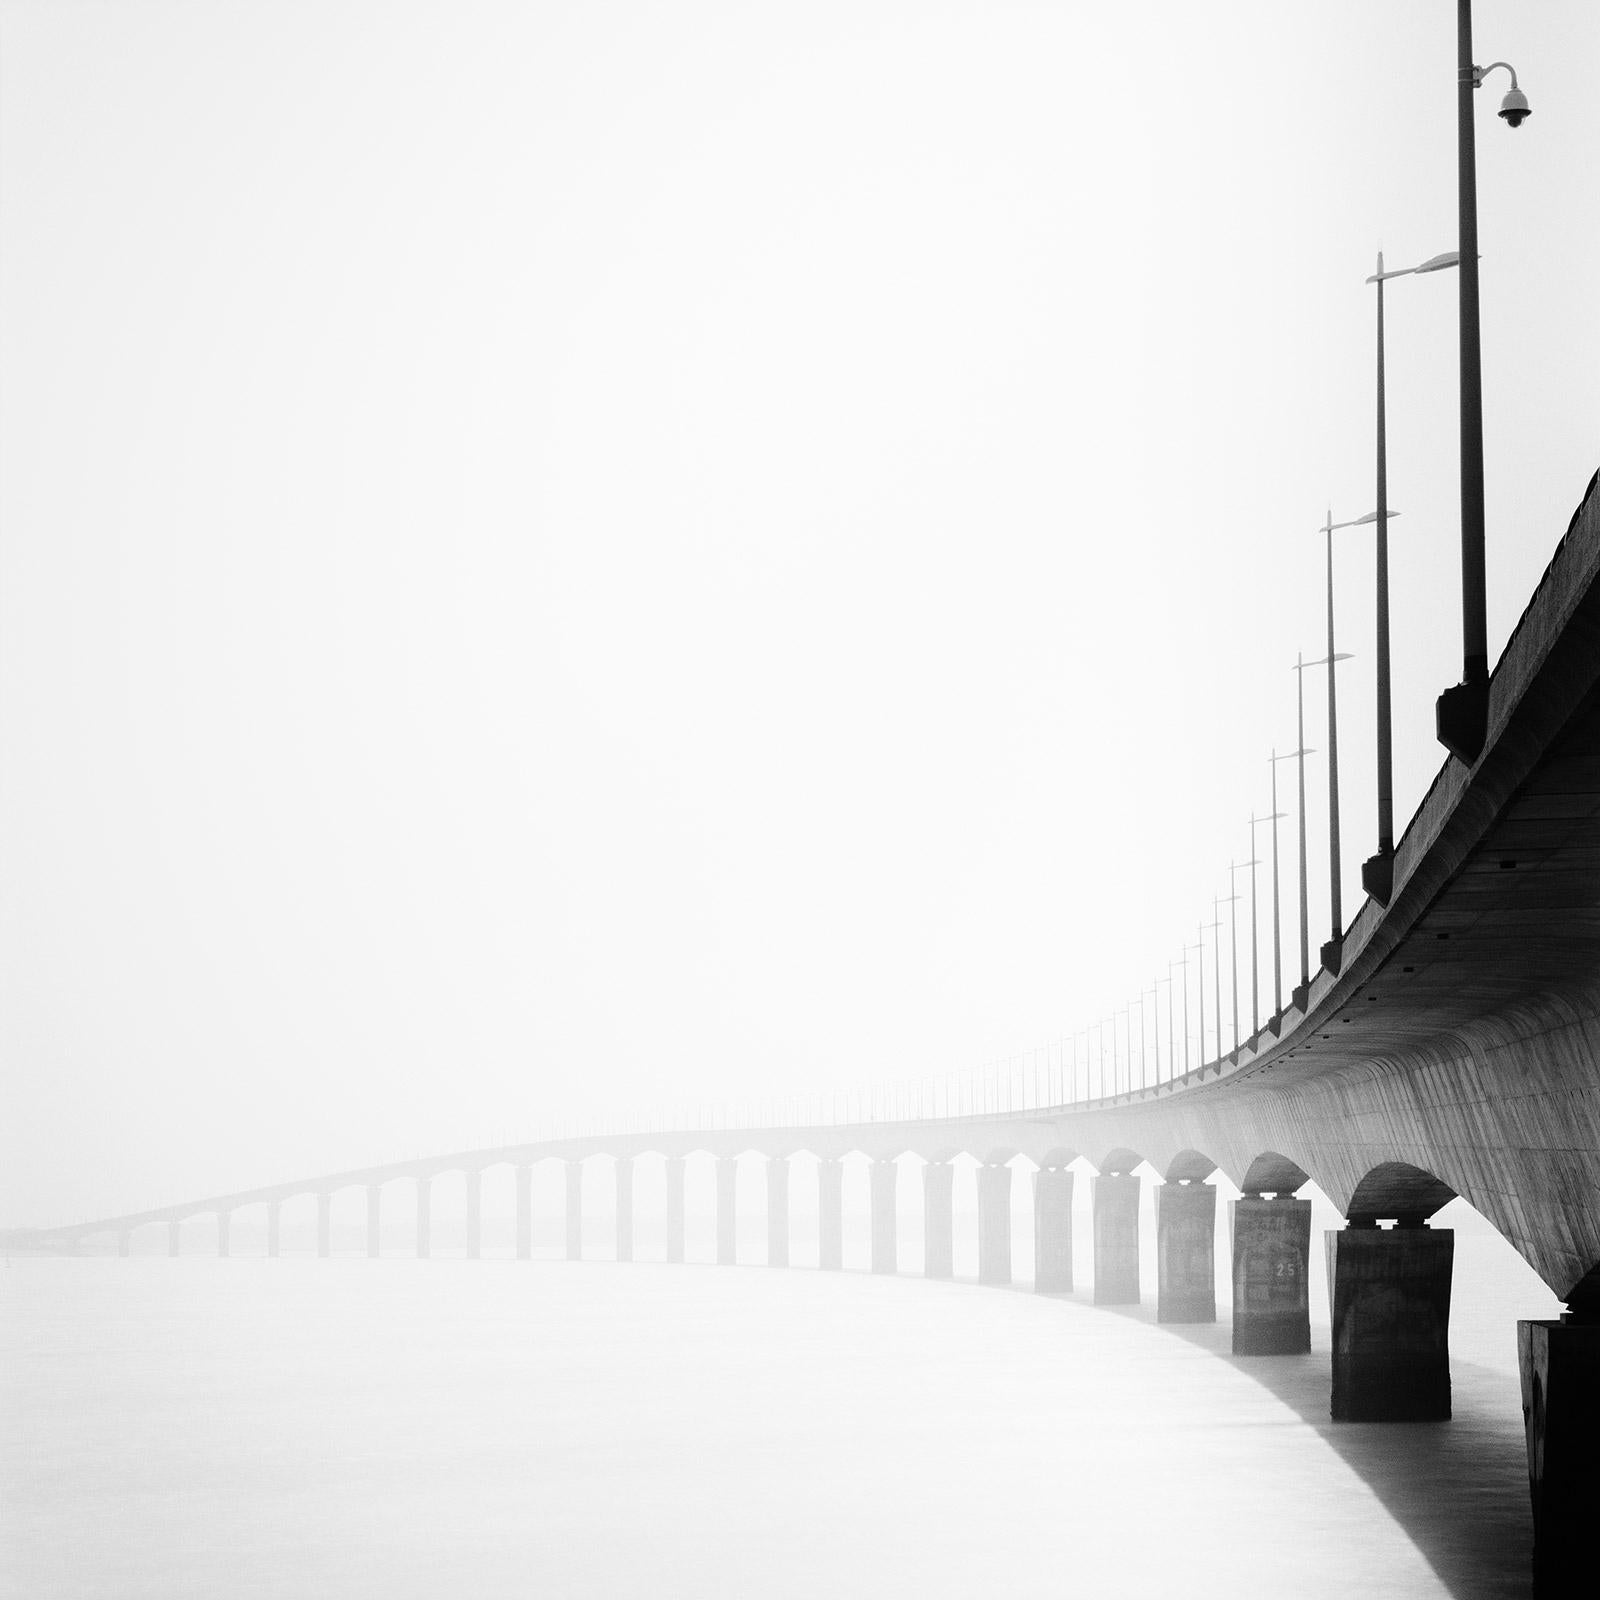 Gerald Berghammer Landscape Photograph - Pont de Pont Ile de Re Bridge, black and white photography, fine art landscape